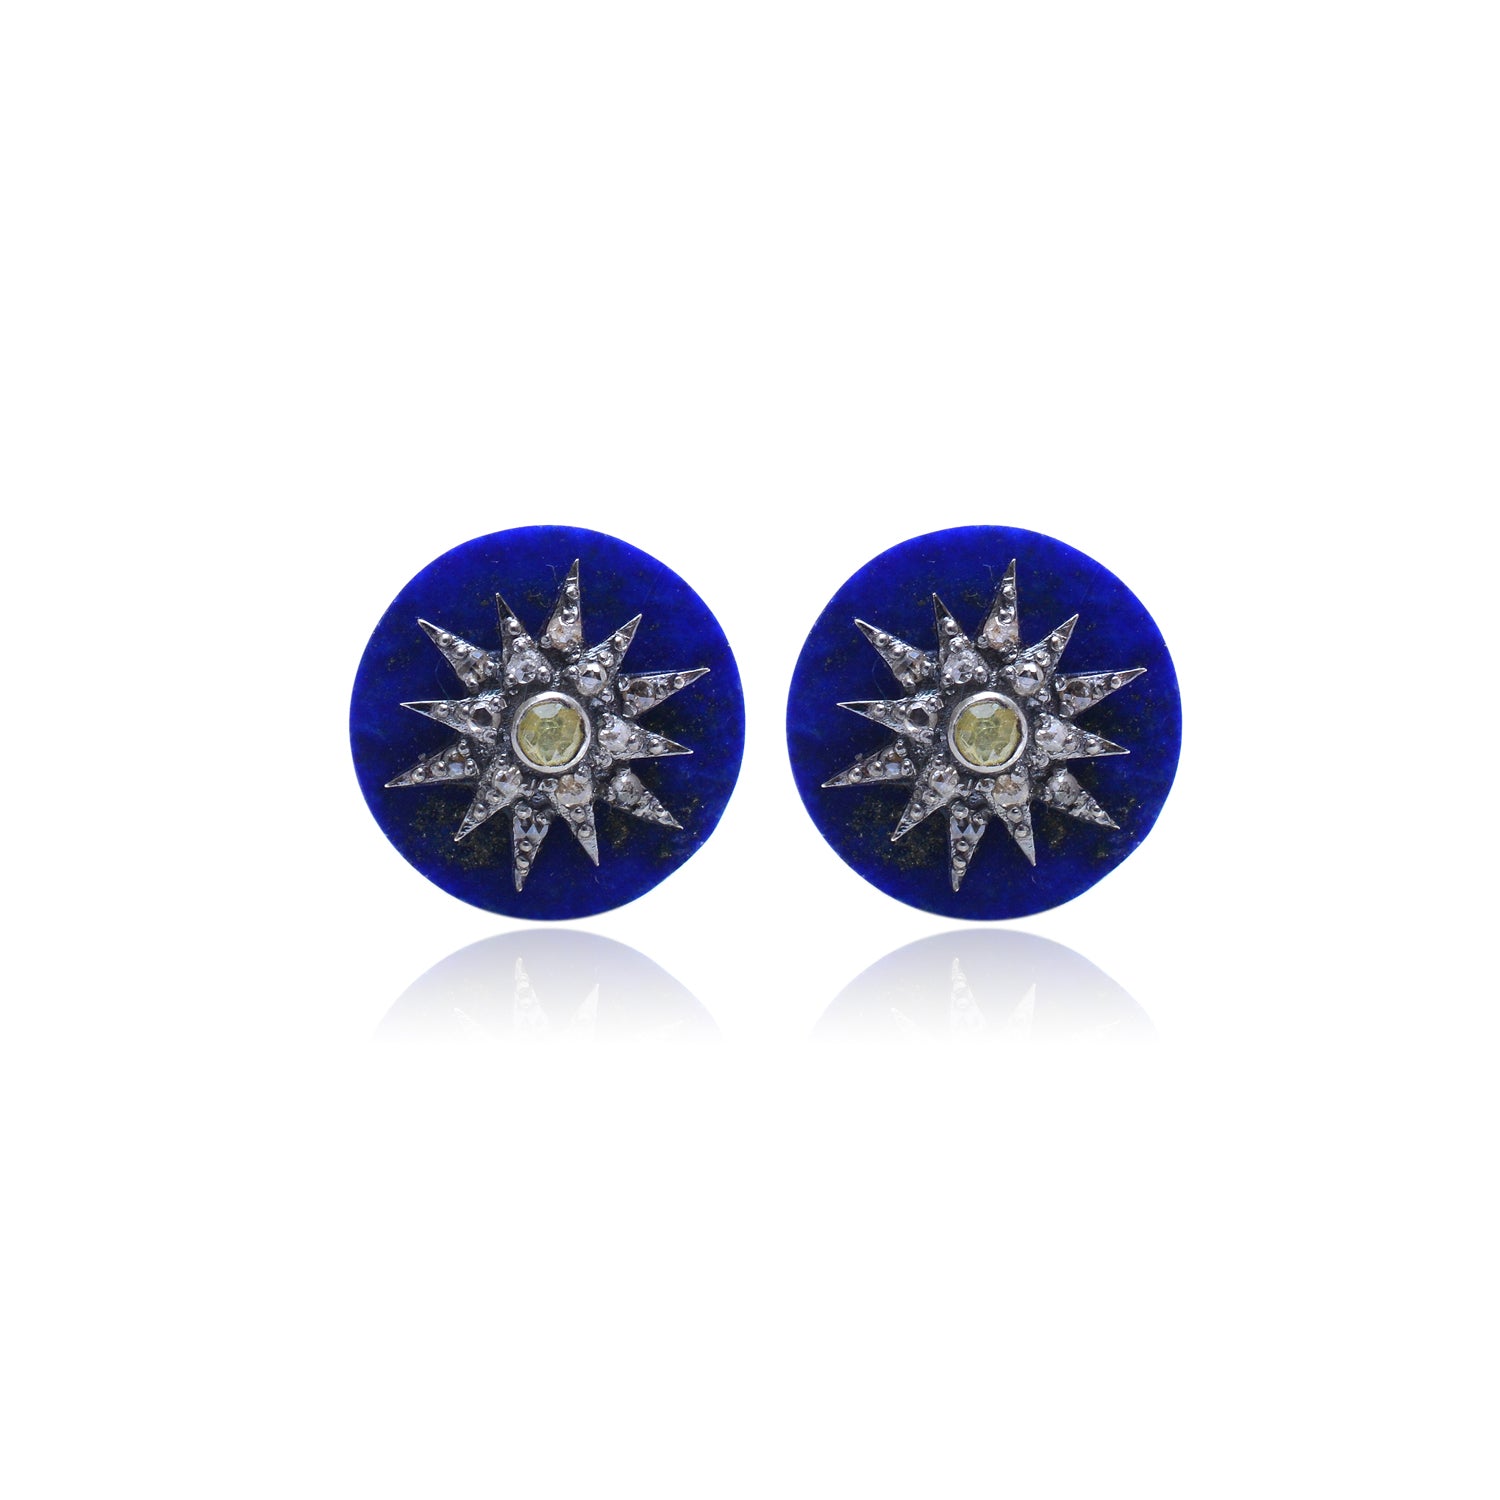 925 Silver Diamond Cufflinks with Lapis Lazuli